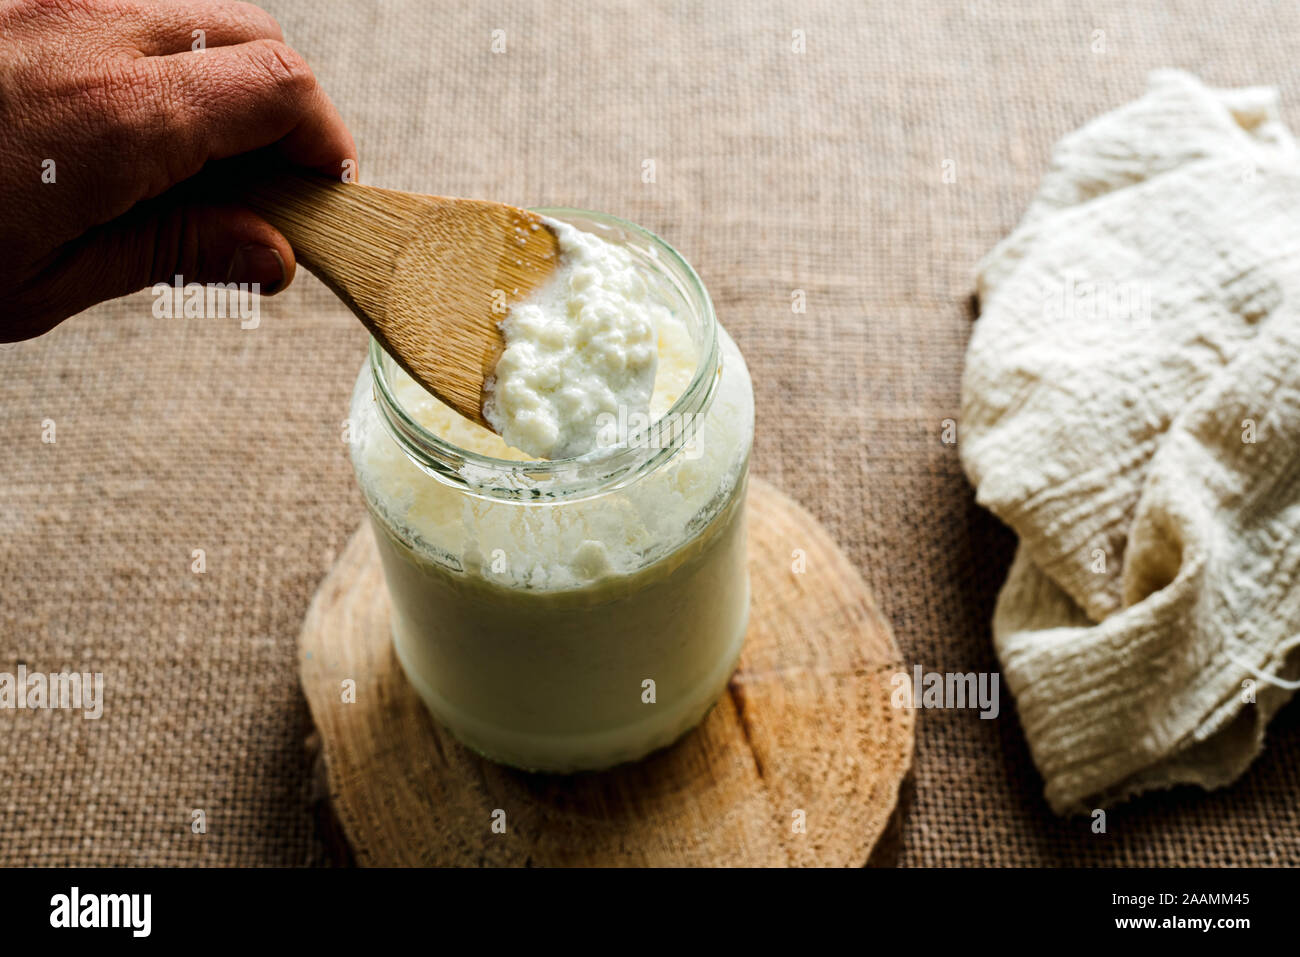 La main de l'homme verse le kéfir de lait dans un pichet de préparer un petit-déjeuner sain pour le microbiote intestinal. Banque D'Images